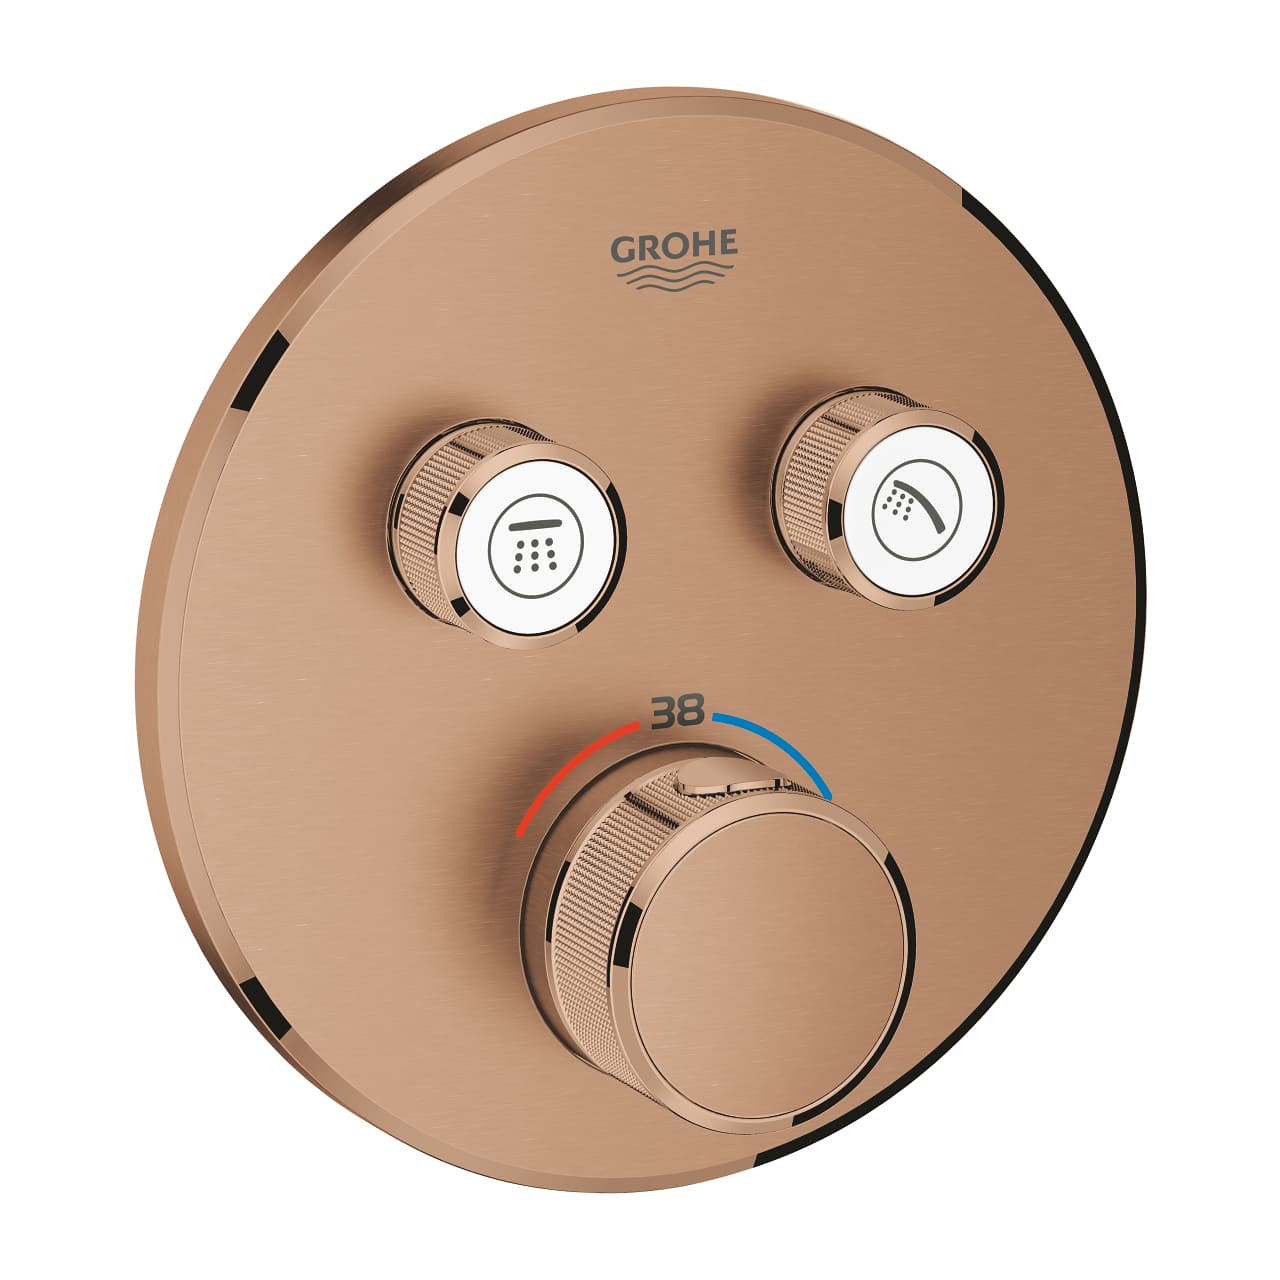 GROHE Grohtherm SmartControl - podtynkowa bateria termostatyczna do obsługi dwóch wyjść wody brushed warm sunset 29119DL0